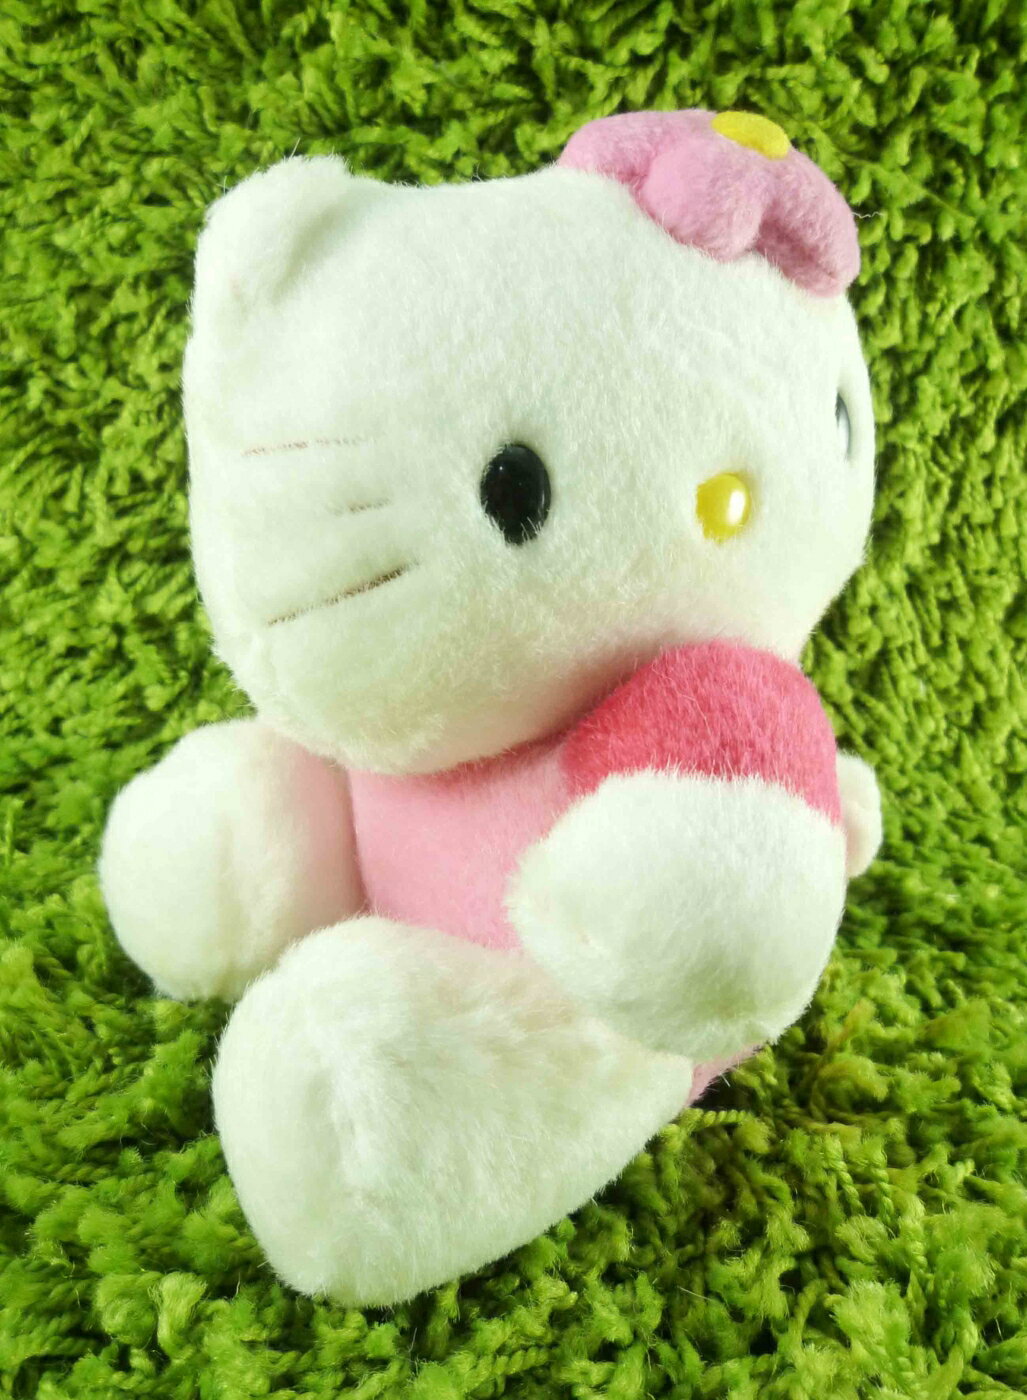 【震撼精品百貨】Hello Kitty 凱蒂貓 KITTY絨毛娃娃-側坐造型 震撼日式精品百貨